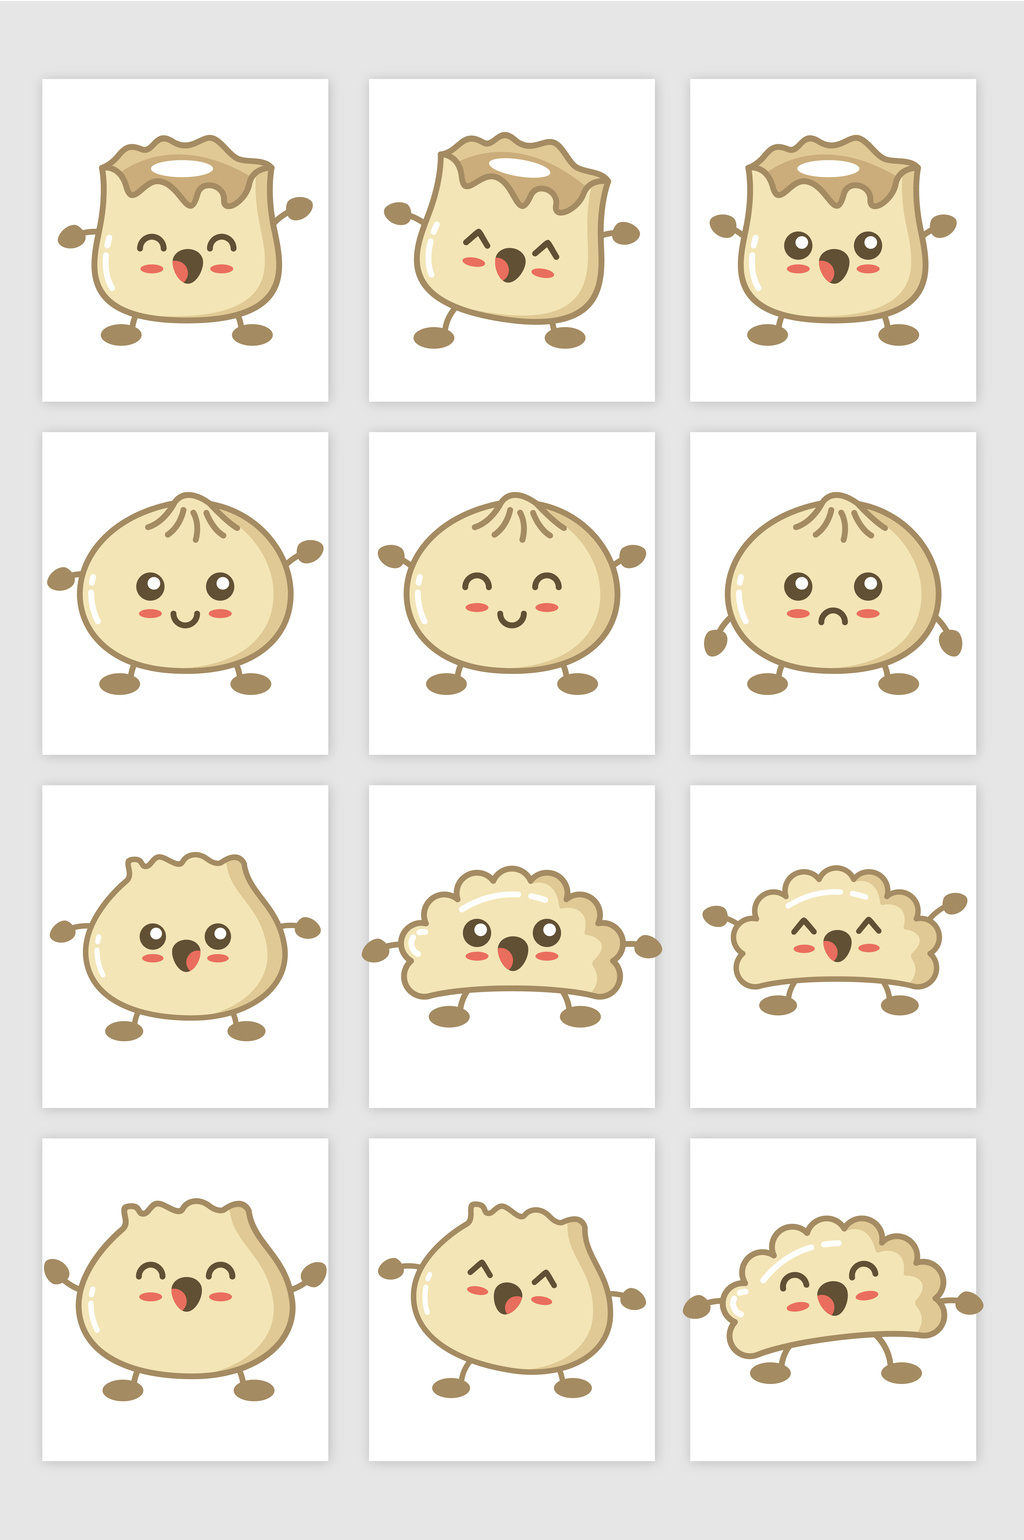 包子饺子卡通表情矢量图形